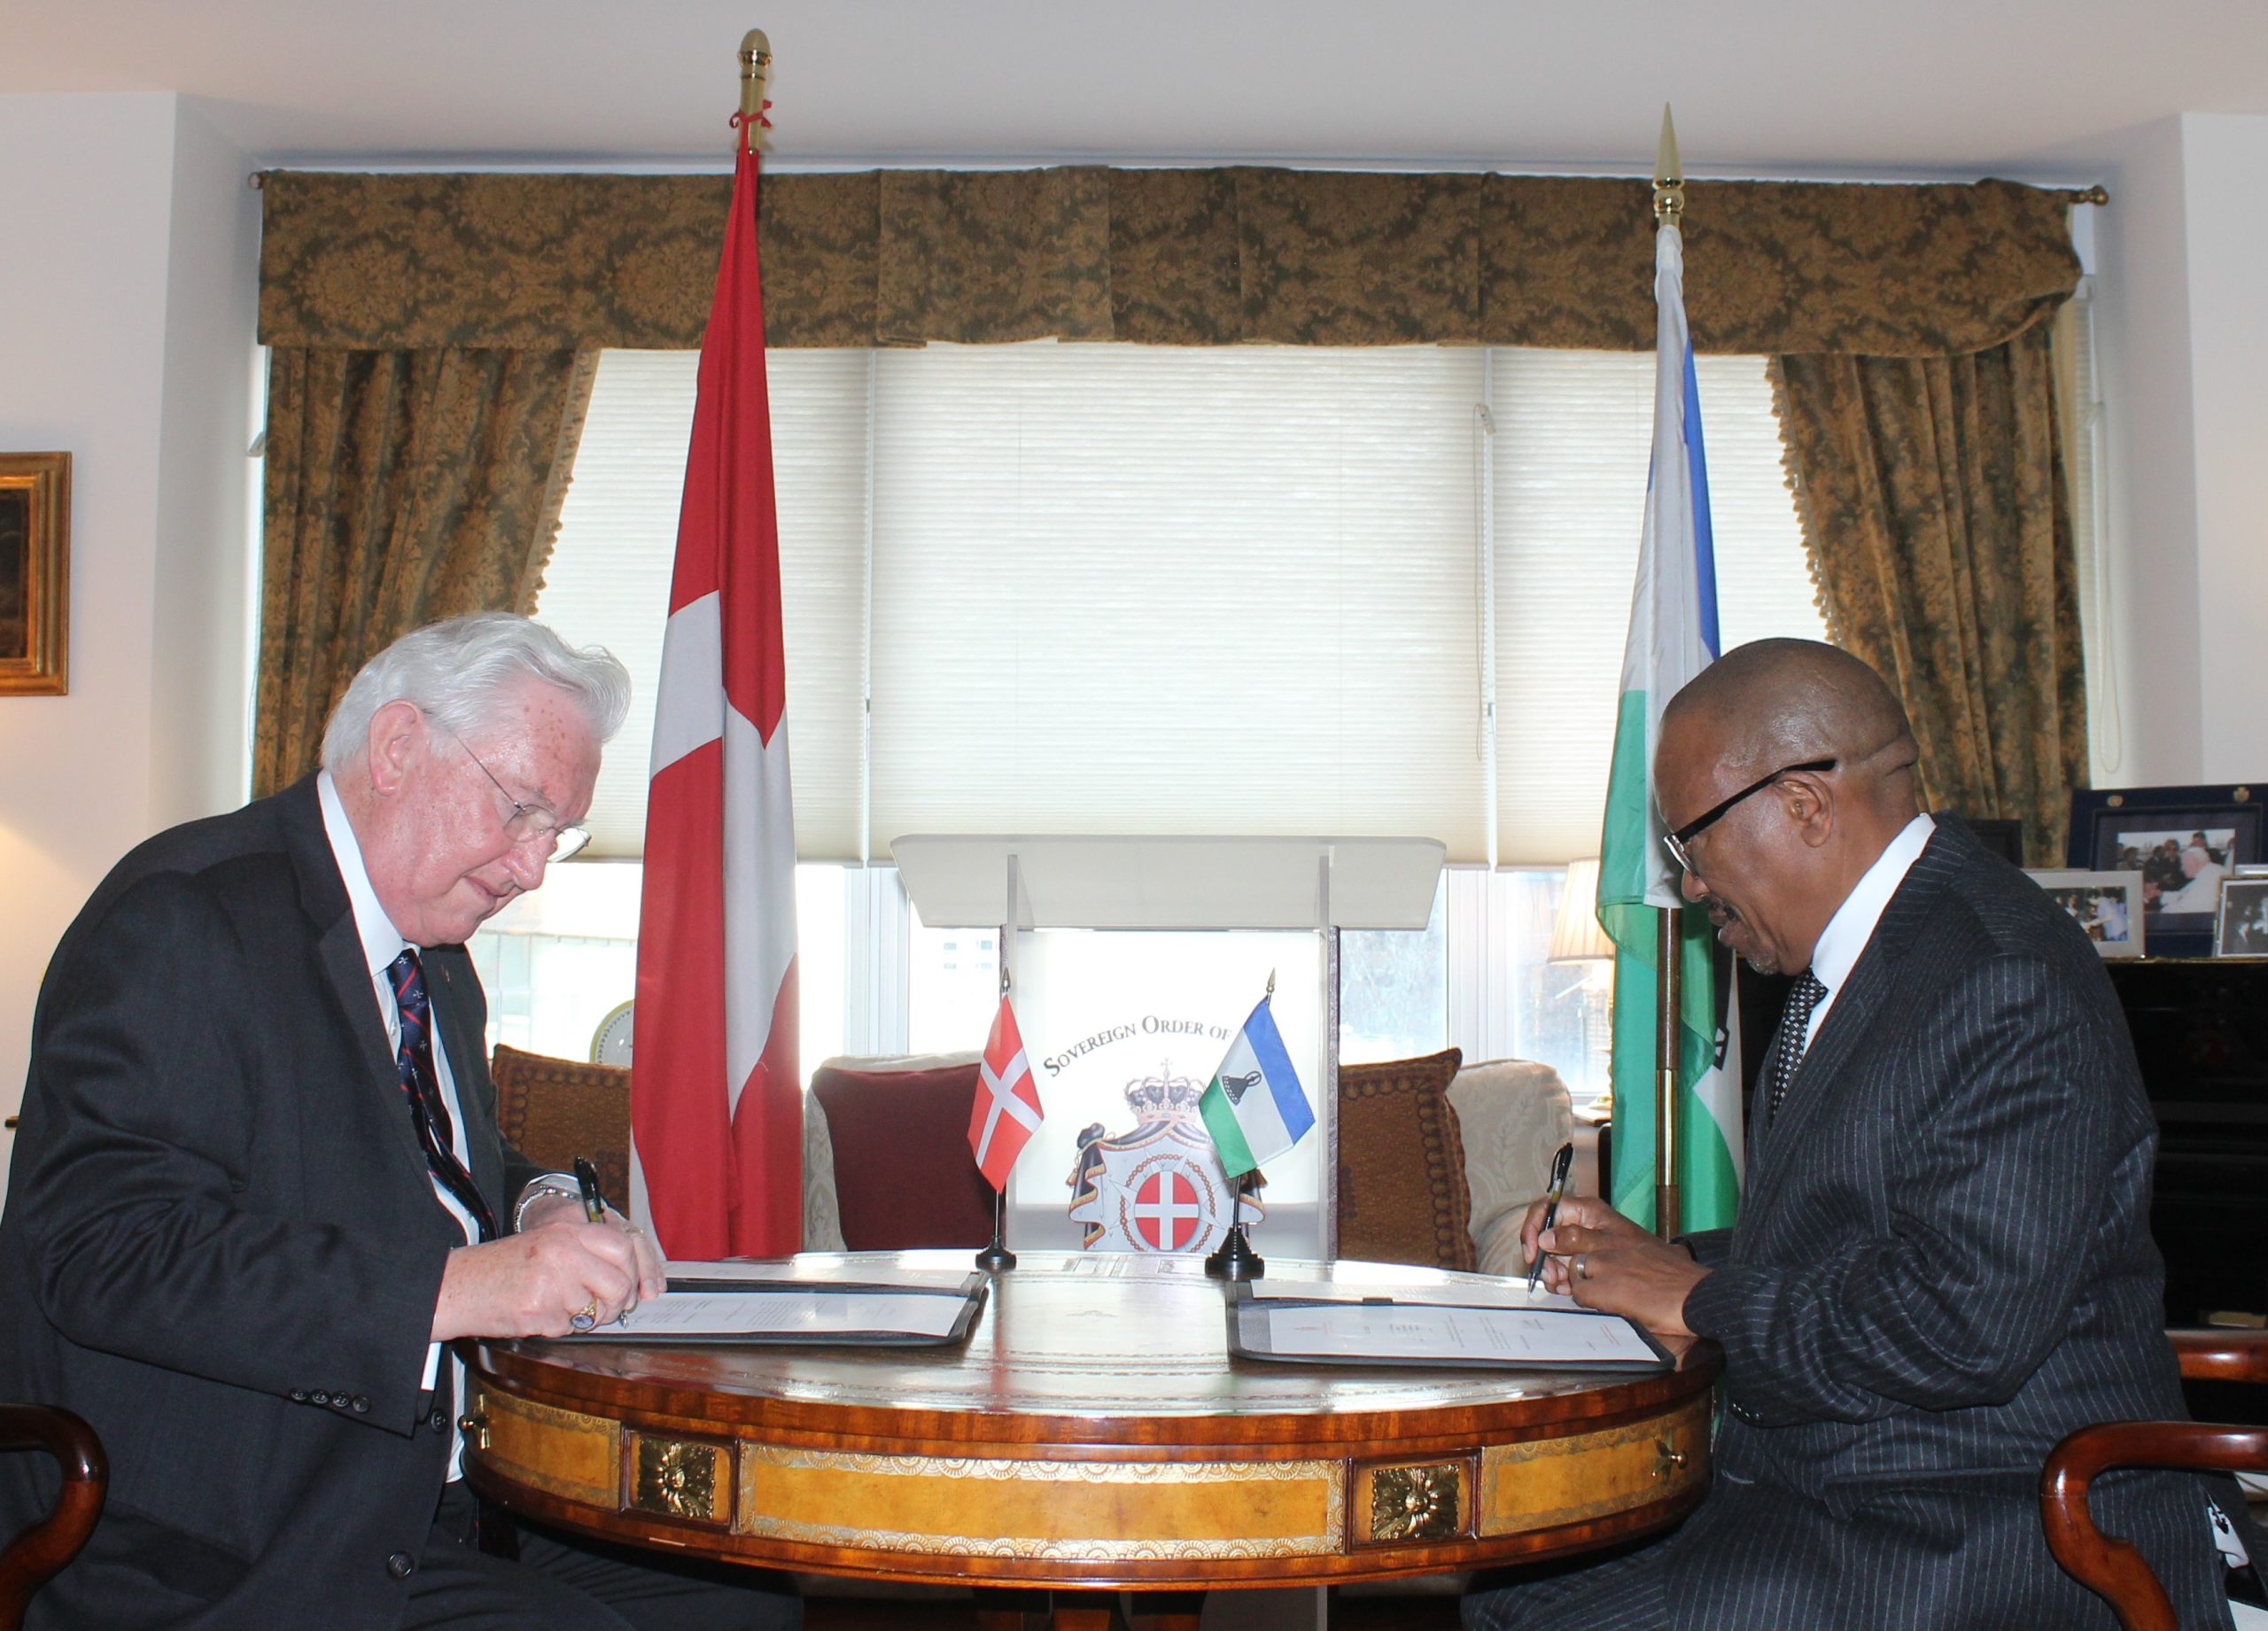 La mission de l’Ordre de Malte auprès des Nations Unies à New-York annonce l’ouverture de relations diplomatiques avec le Royaume du Lesotho